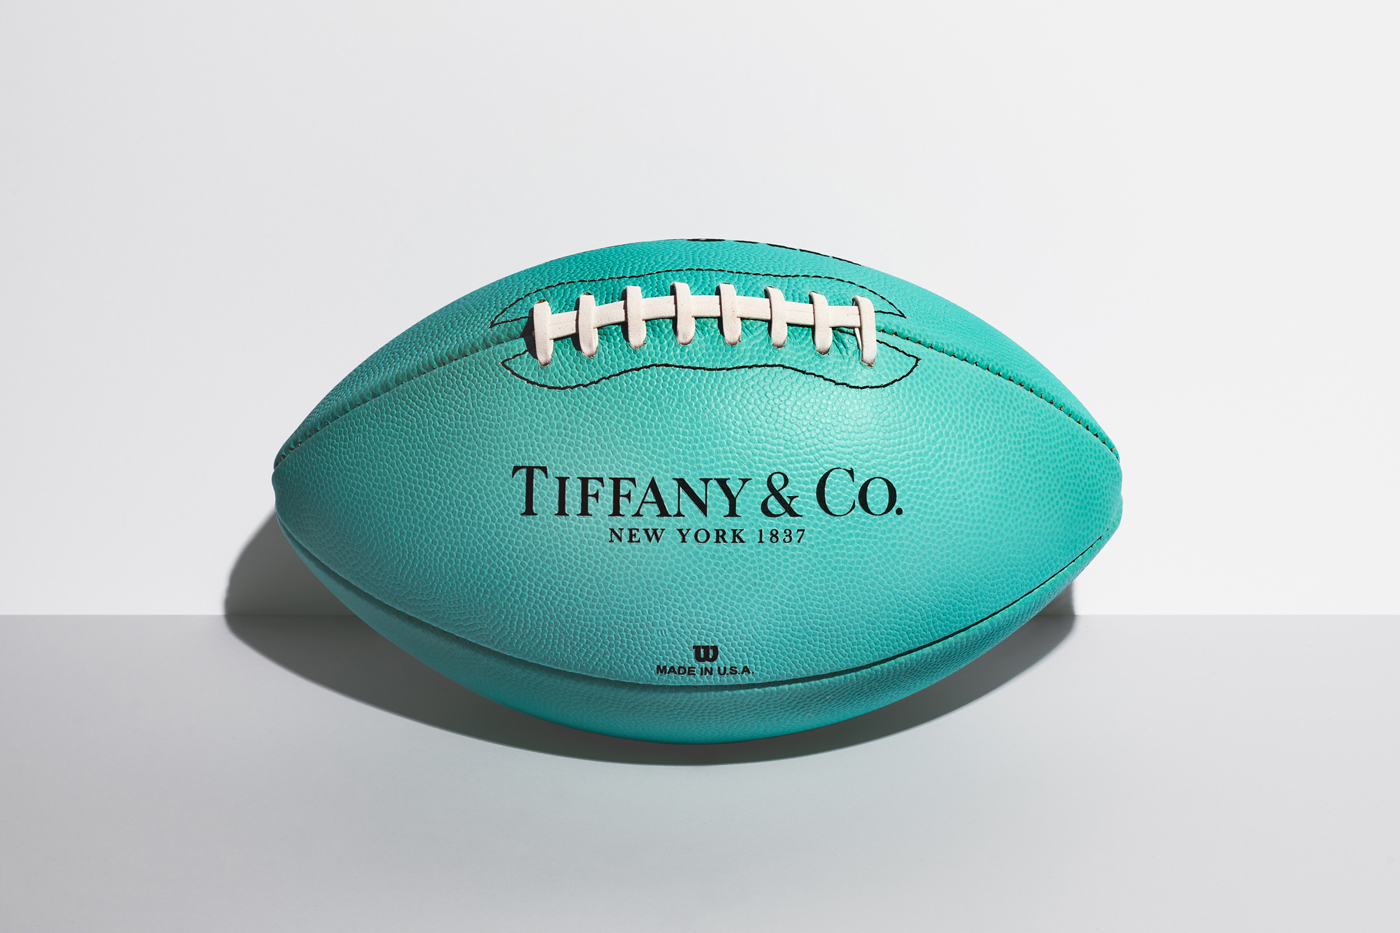 Tiffany Football (US)